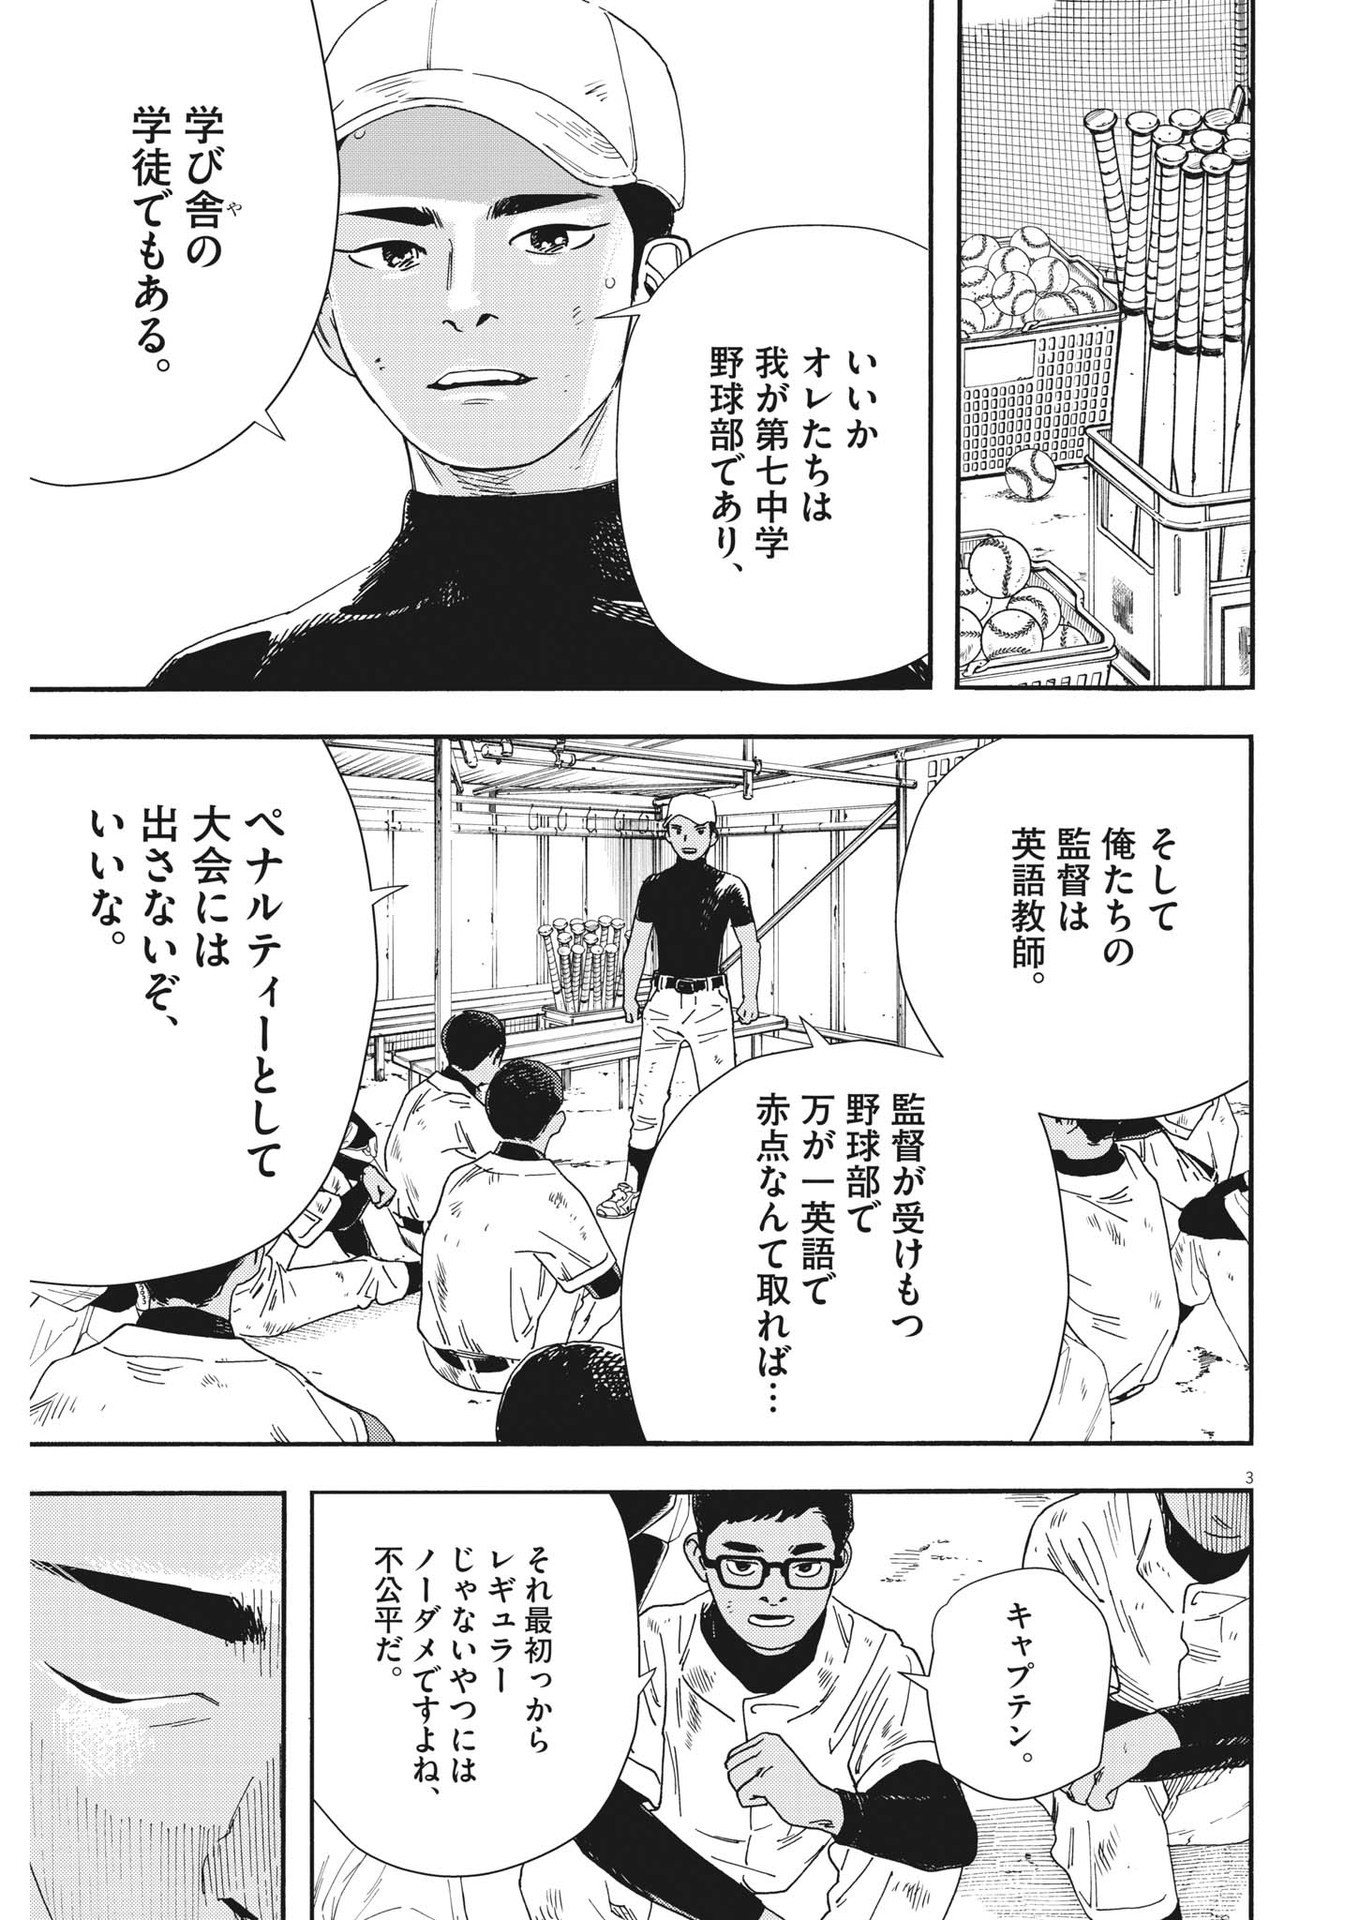 Hoshino-kun, Shitagatte! - Chapter 2 - Page 3